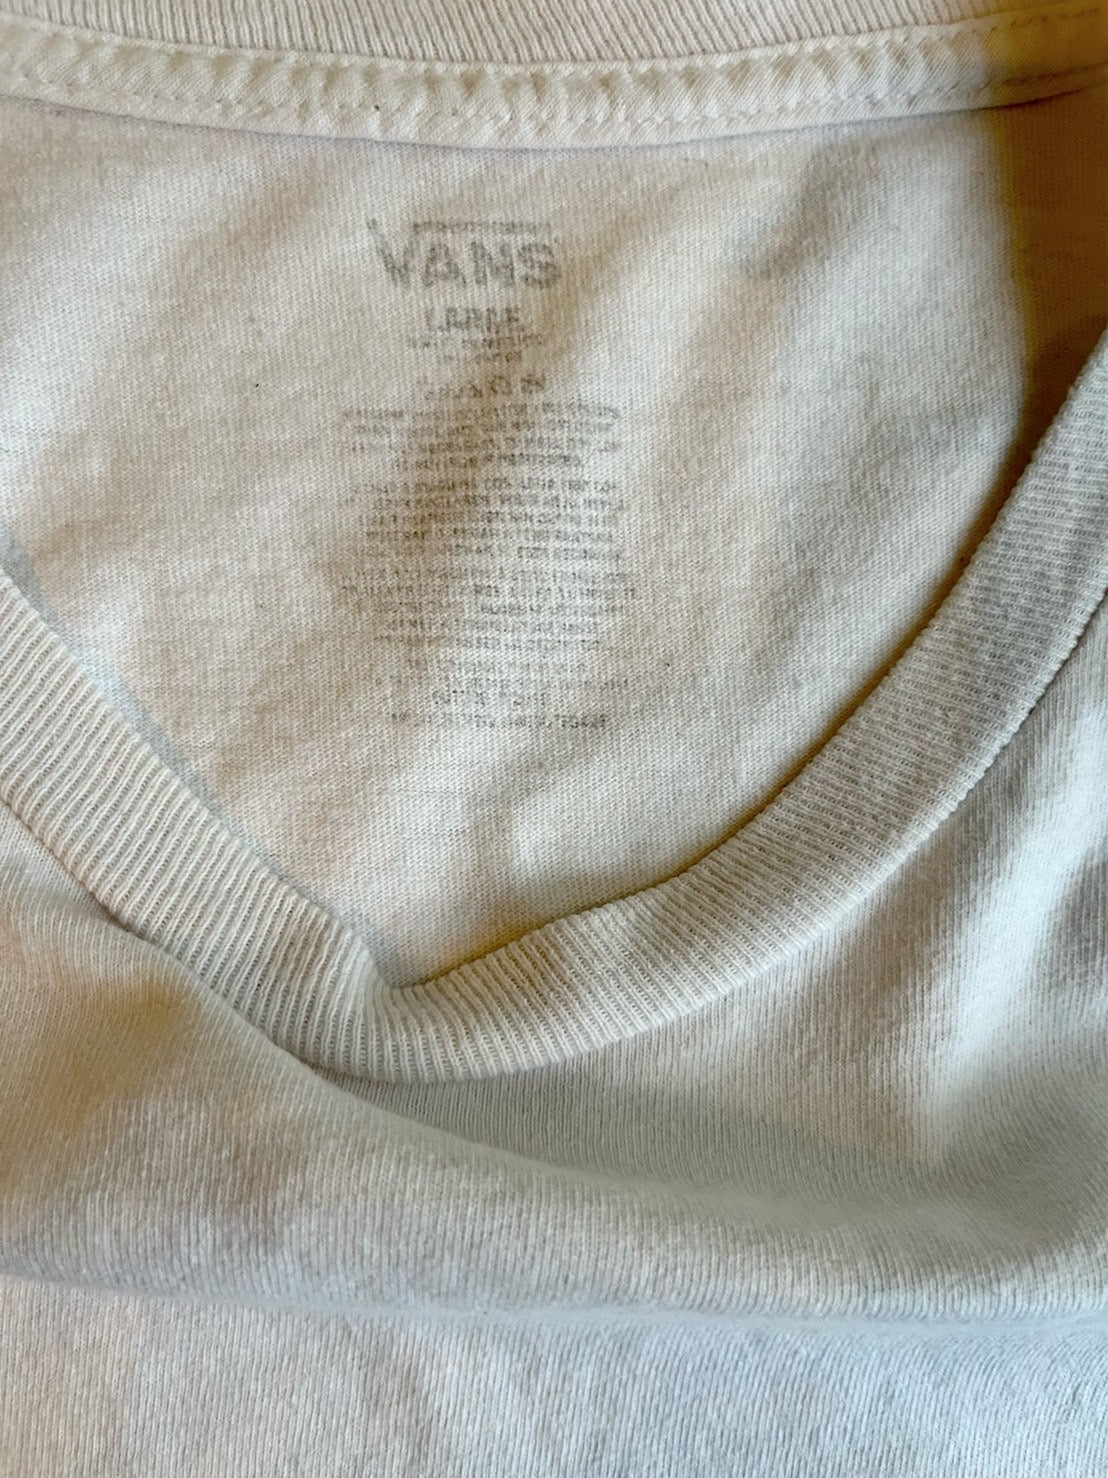 【USED】VANS logo T-shirt white バンズ サーフスケート 半袖 ロゴ Tシャツ 白 (men's L)